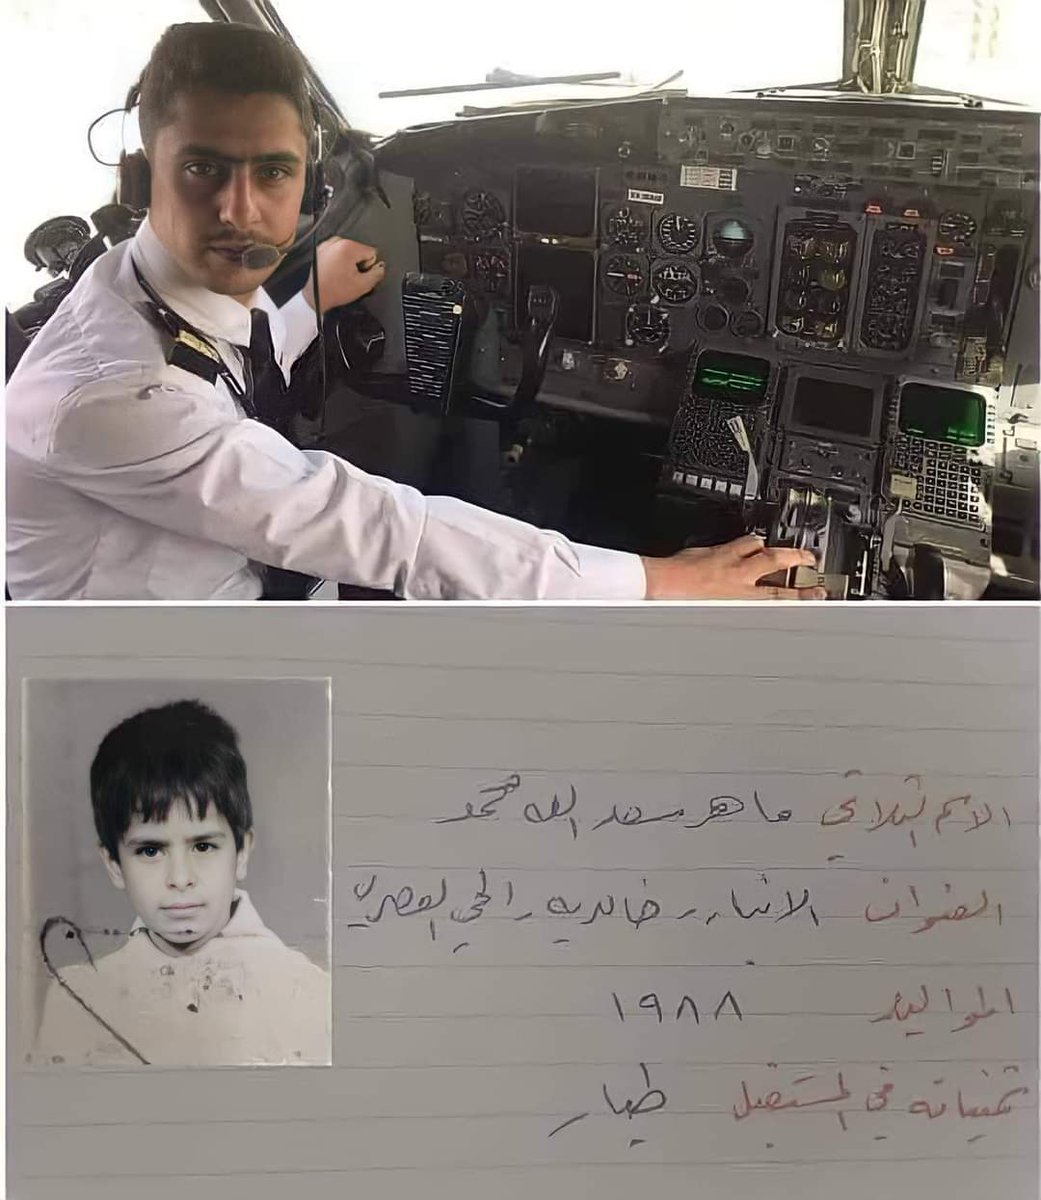 Un commandant de bord saoudien à mis cette photo en disant:

« Ma mère avait écrit dans mon école que mon futur métier serait pilote de ligne et elle me disait souvent dans les années 1990: 'Quand tu seras pilote, emmène-moi à #Makkah dans ton avion.'

Aujourd'hui, ma mère fait